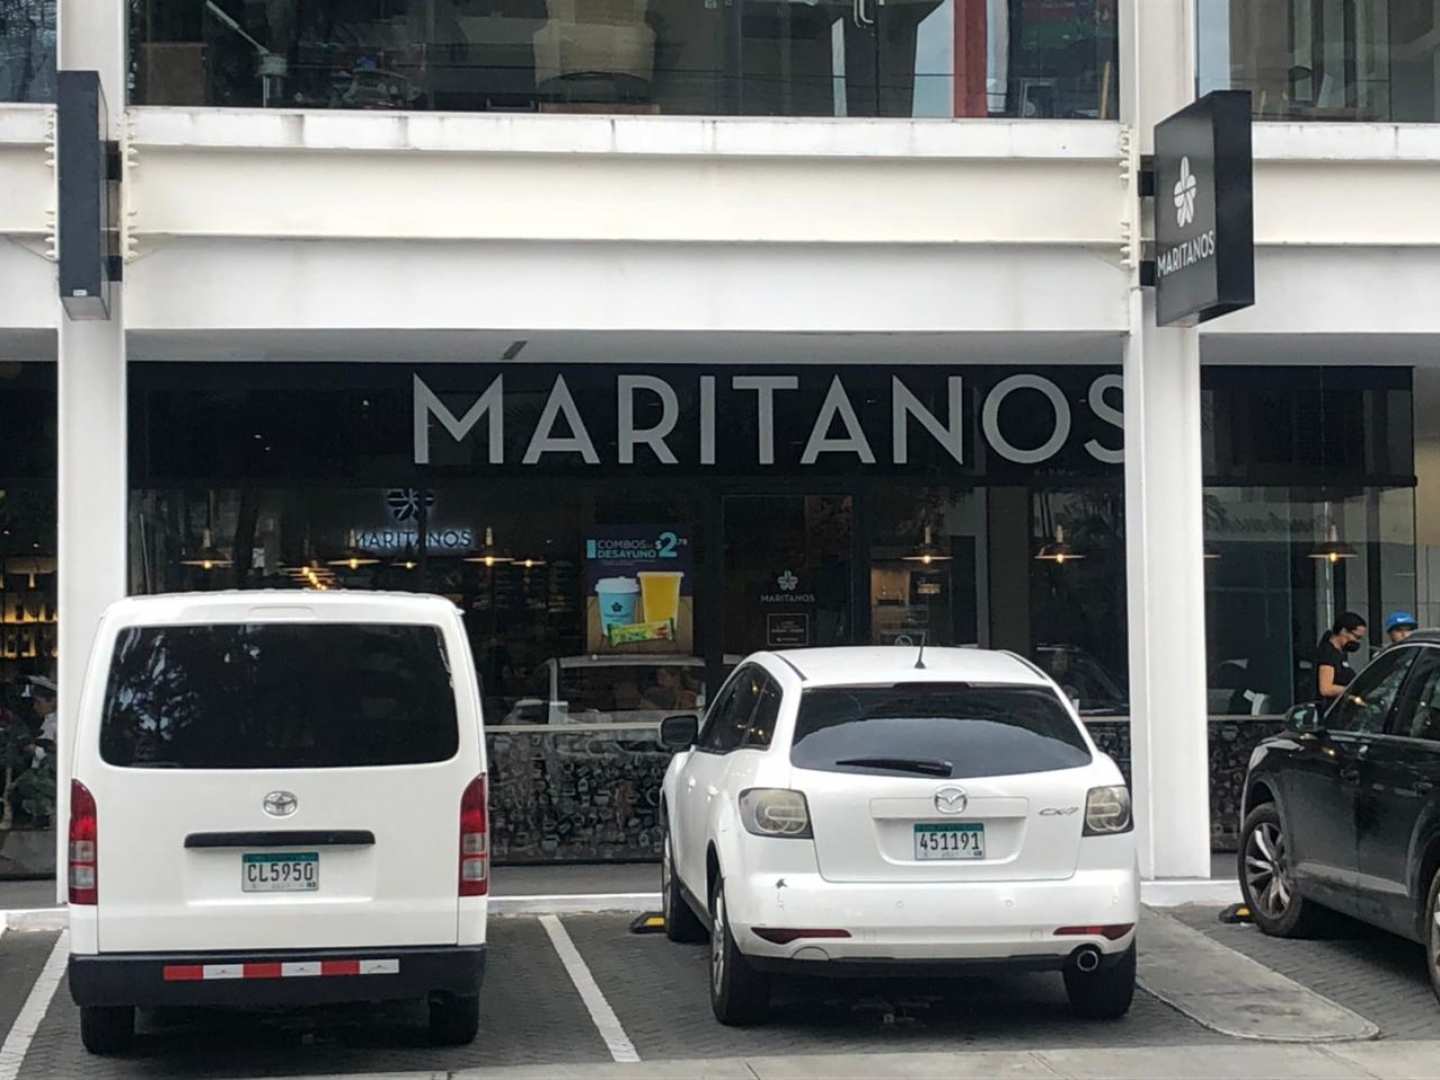 Maritanos Cafe